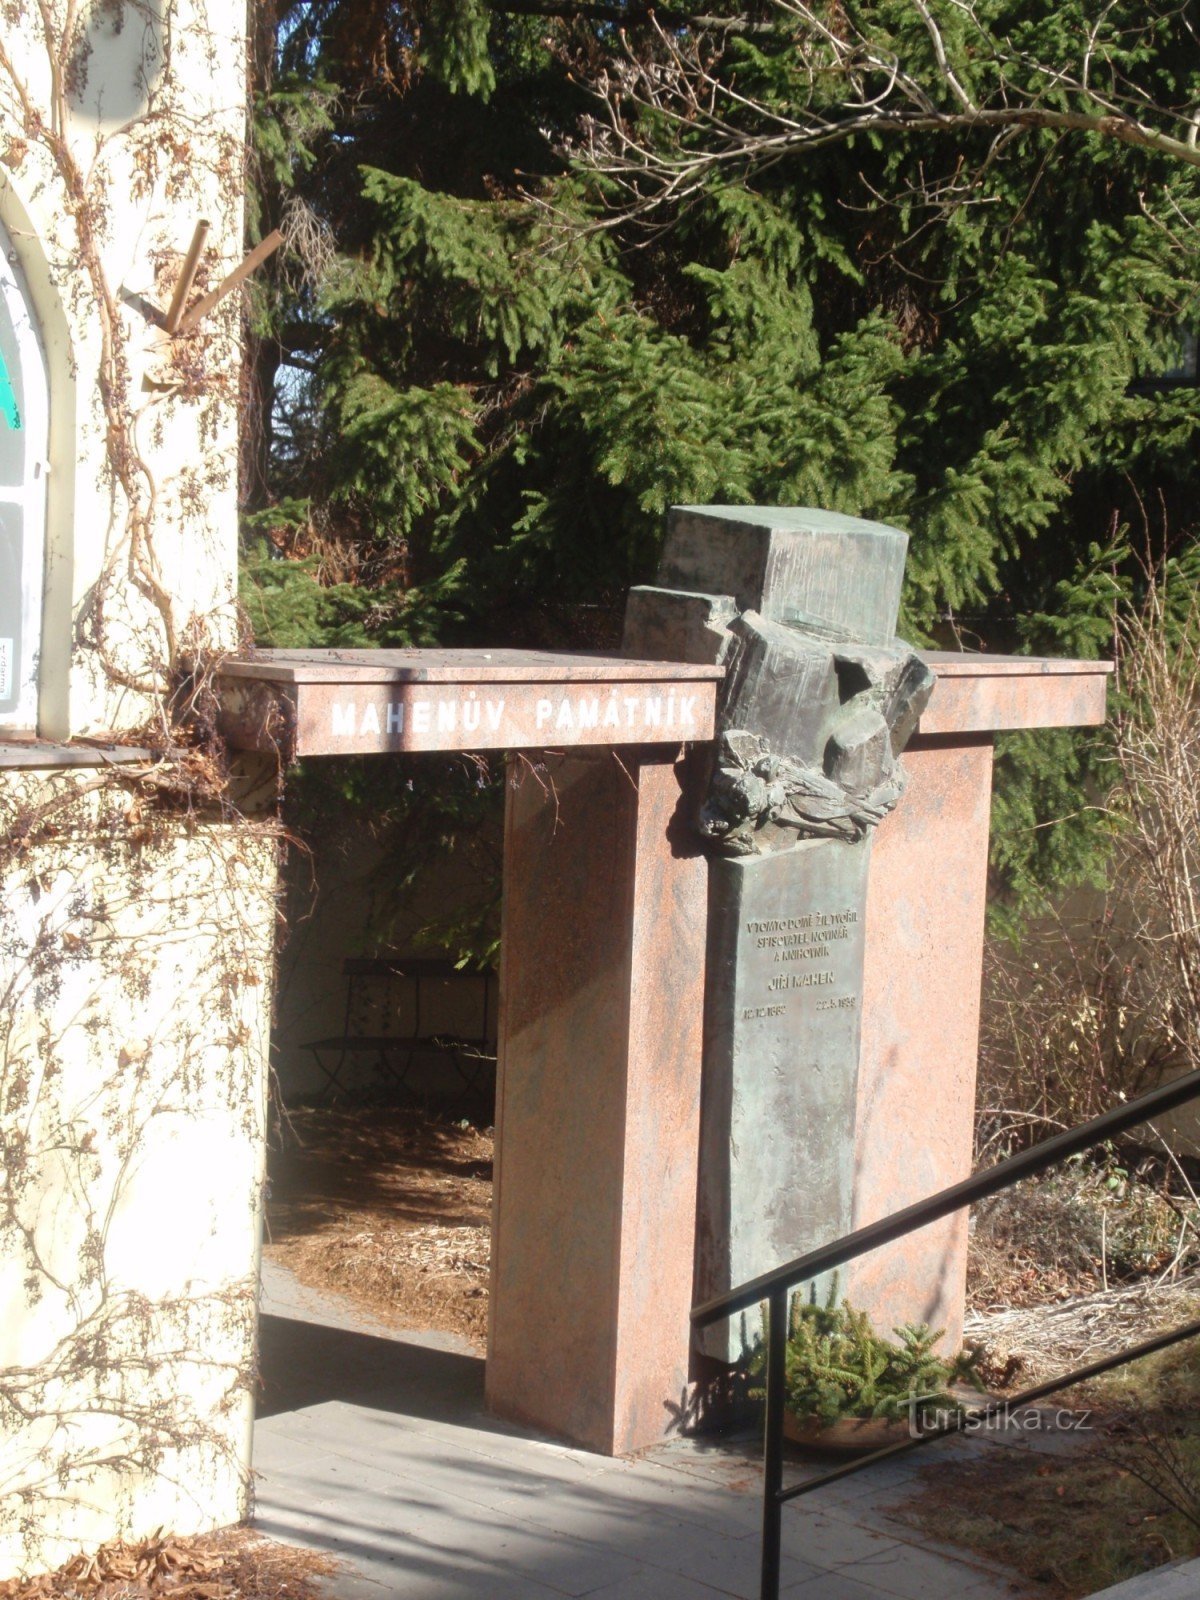 Monumentul lui Mahen, Brno